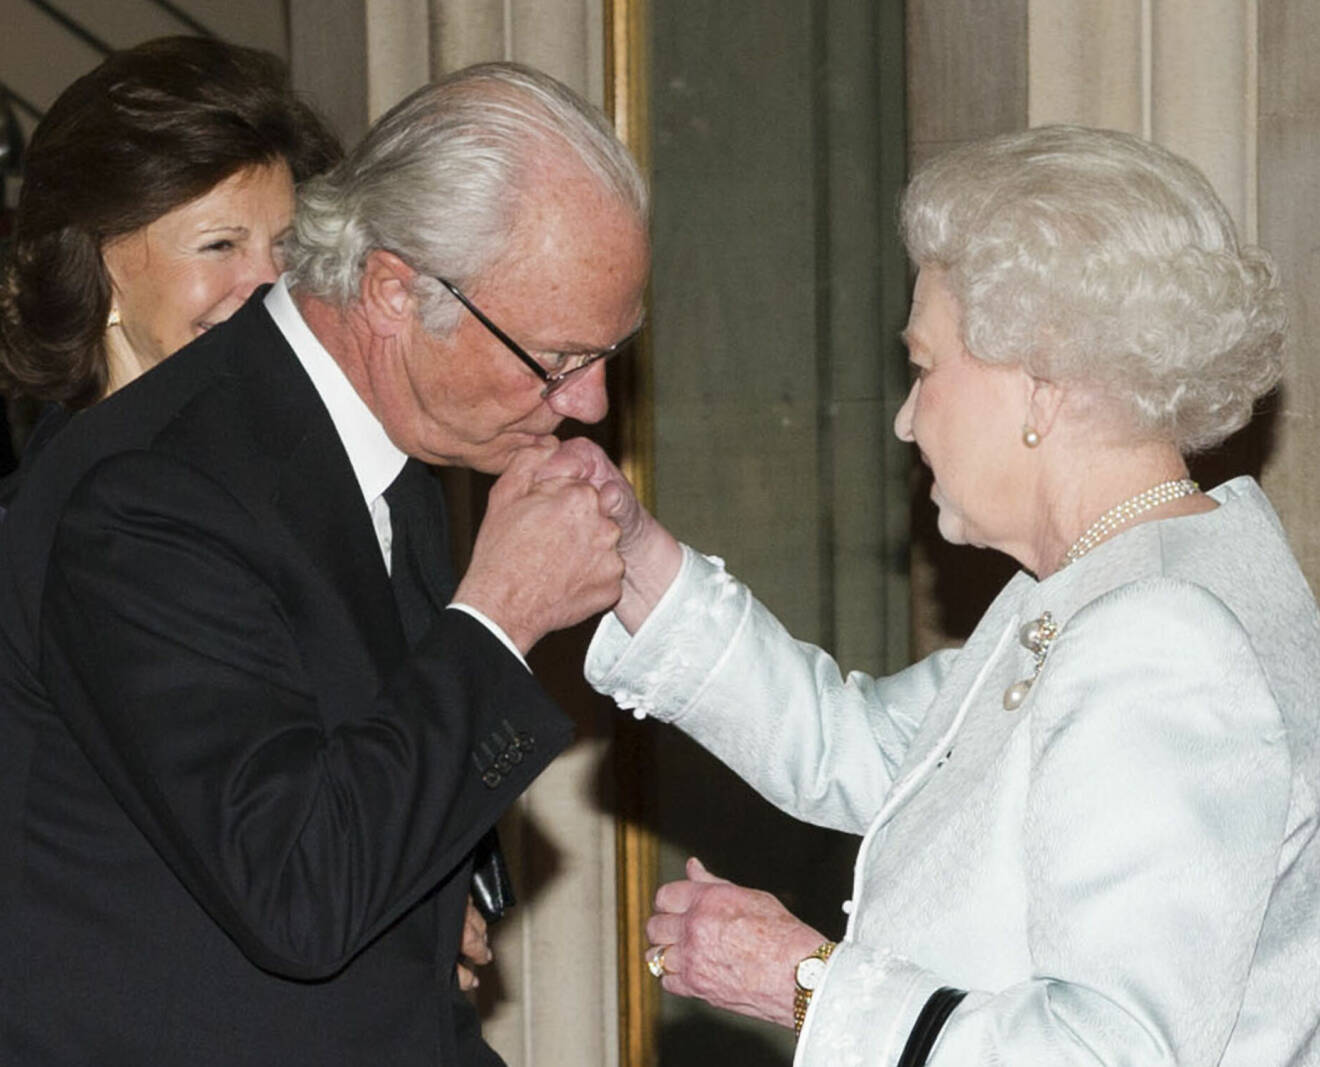 Kungen kysser drottning Elizabeth på hand